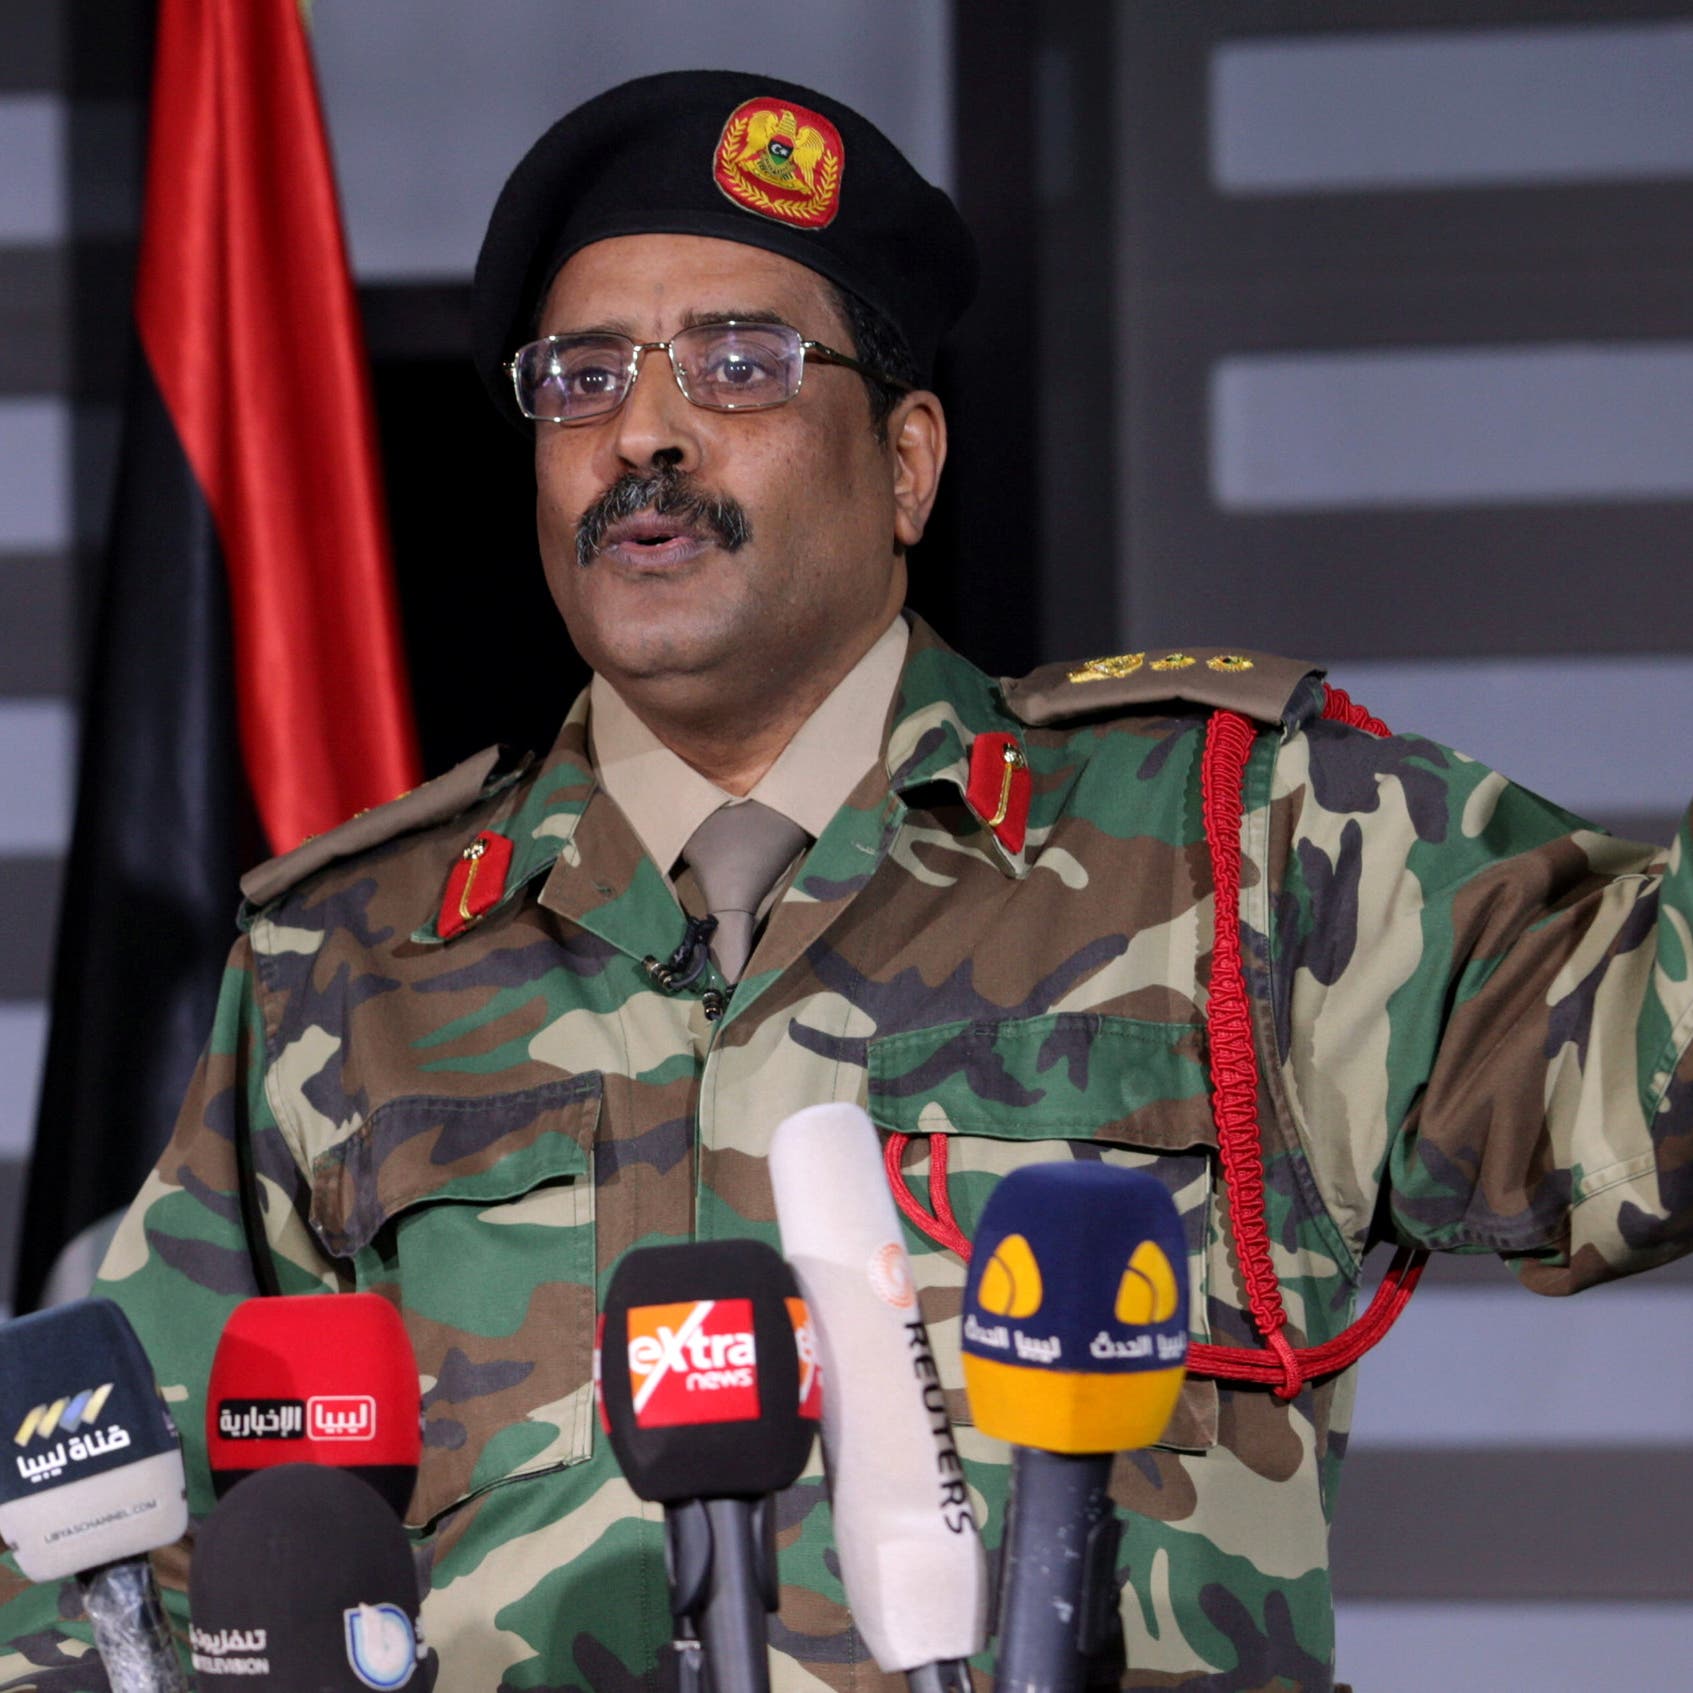 الجيش الليبي: عائدون إلى الوطية وانسحابنا تكتيكي